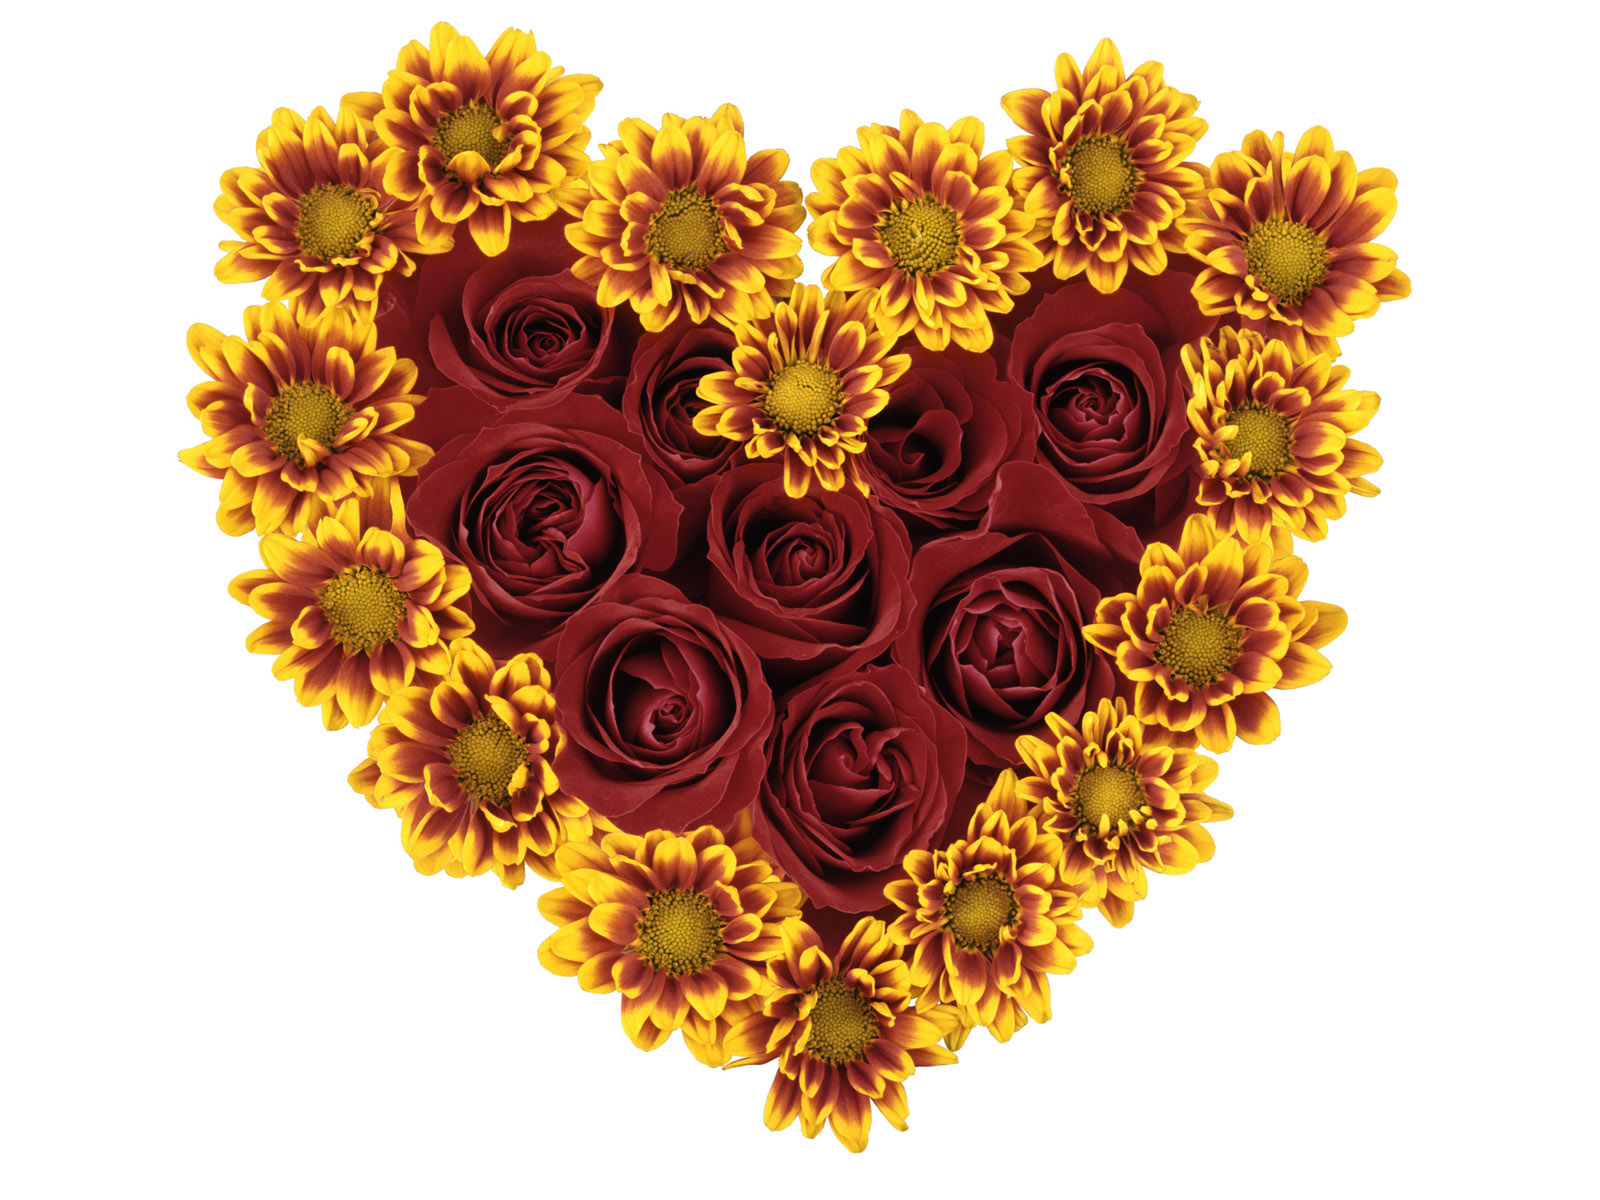 Скачать обои бесплатно Хризантемы, Цветок, Роза, Сердце, Желтый Цветок, Художественные, Красный Цветок картинка на рабочий стол ПК